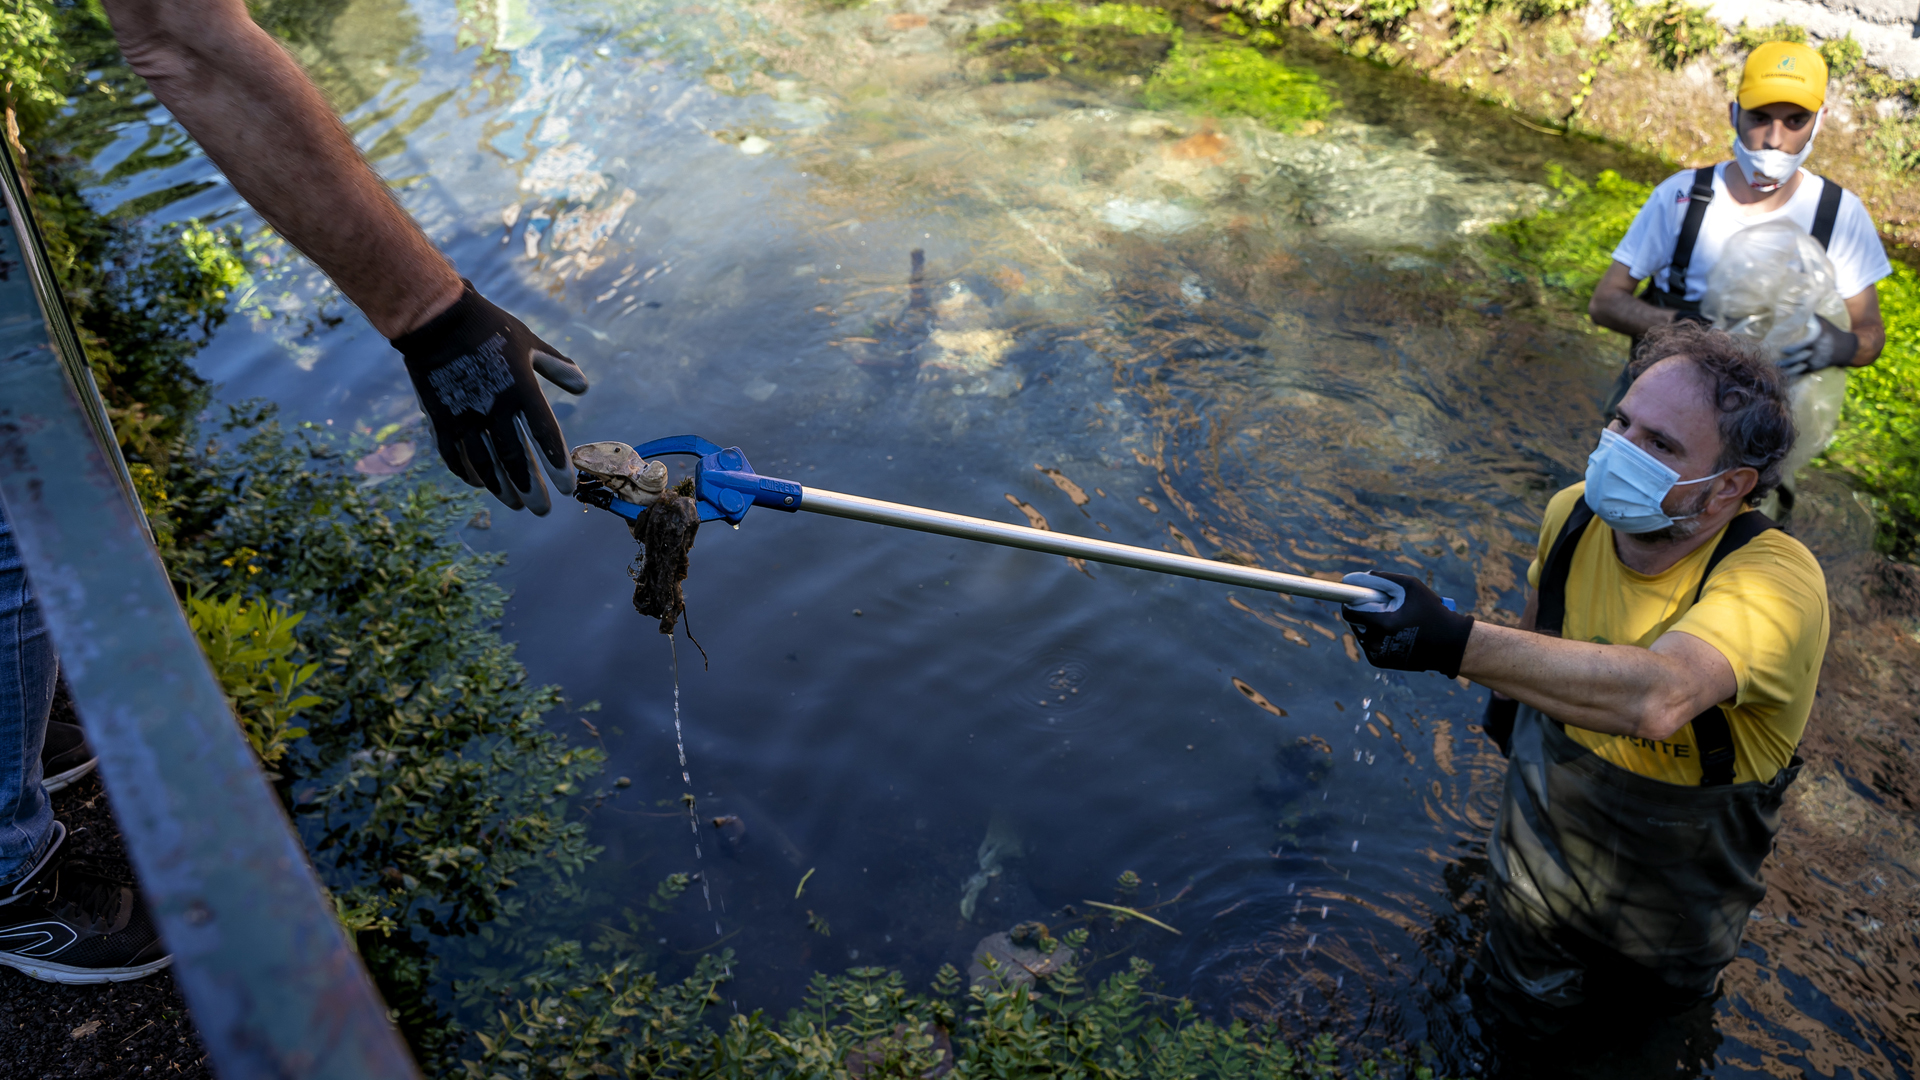 Sarno in Italien: Rettung für Europas schmutzigsten Fluss